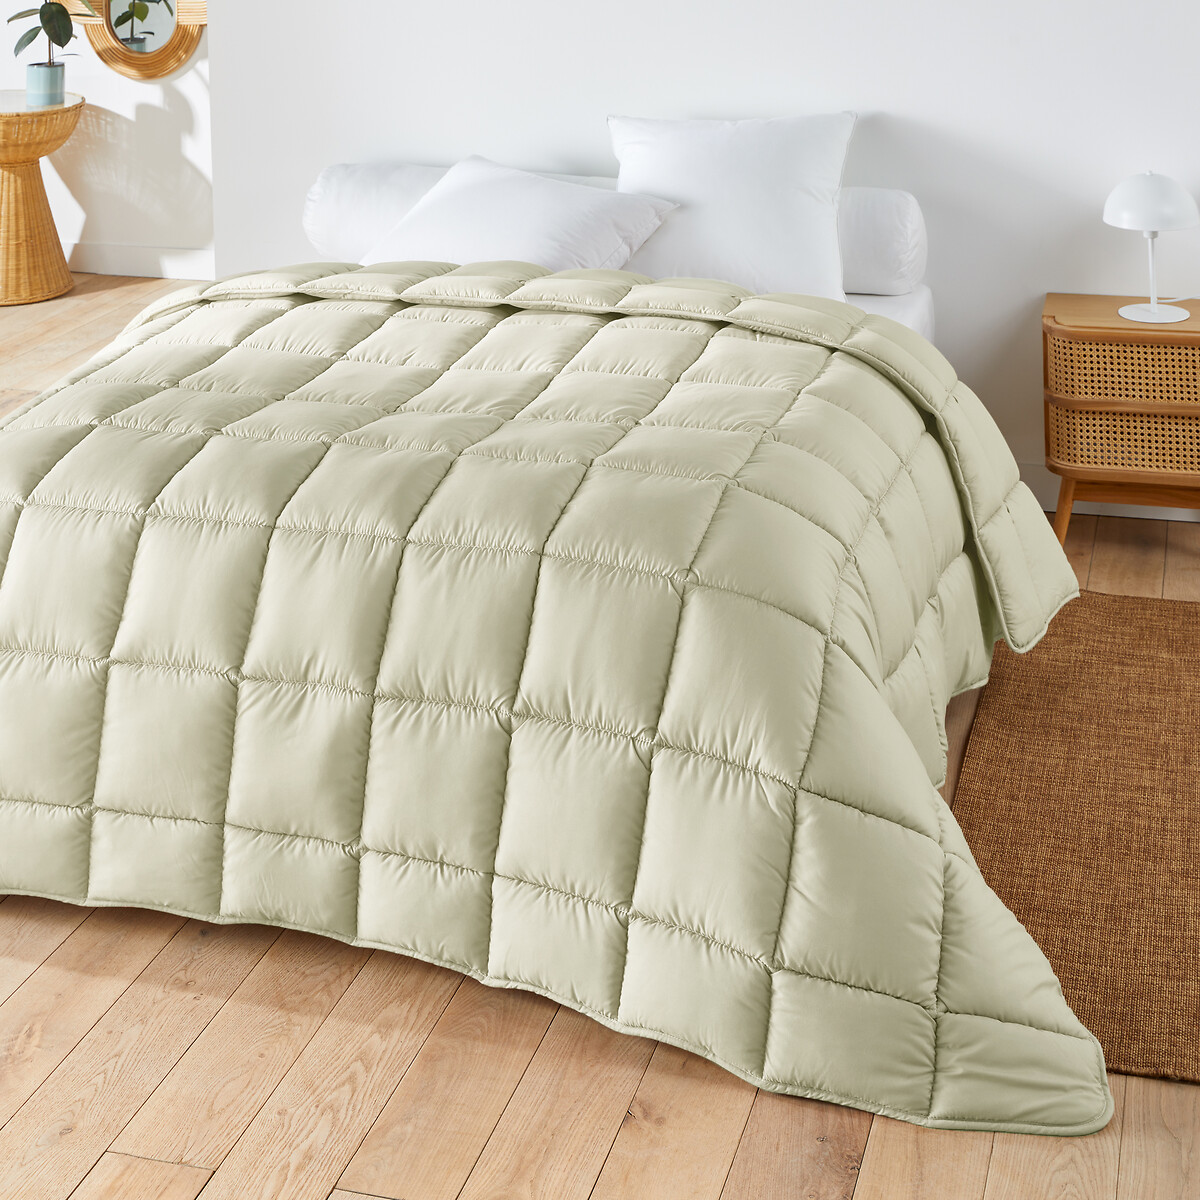 Одеяло яркое из синтетической ткани для прохладного помещения  140 x 200 см бежевый LaRedoute, размер 140 x 200 см - фото 1